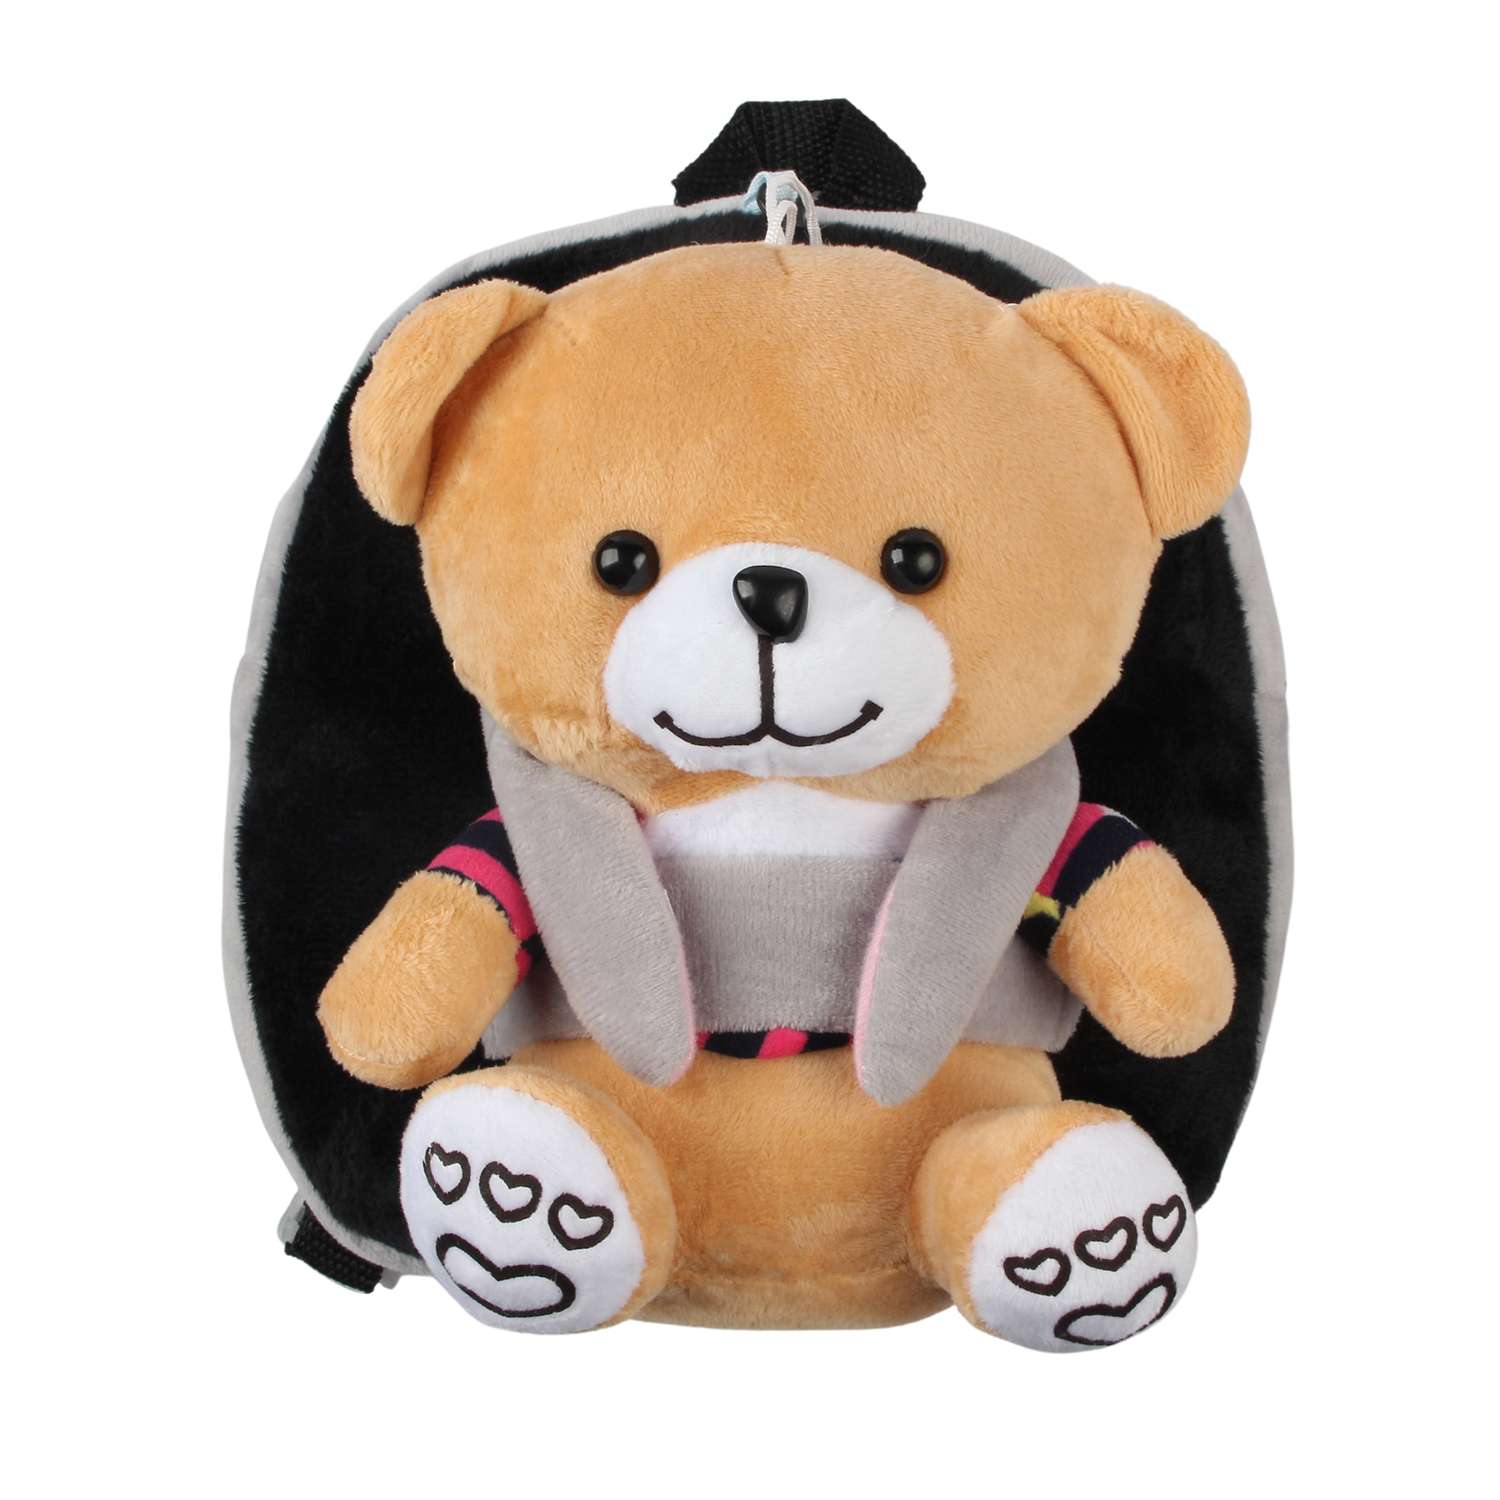 Рюкзак с игрушкой Little Mania серо-черный Мишка светло-коричневый - фото 1